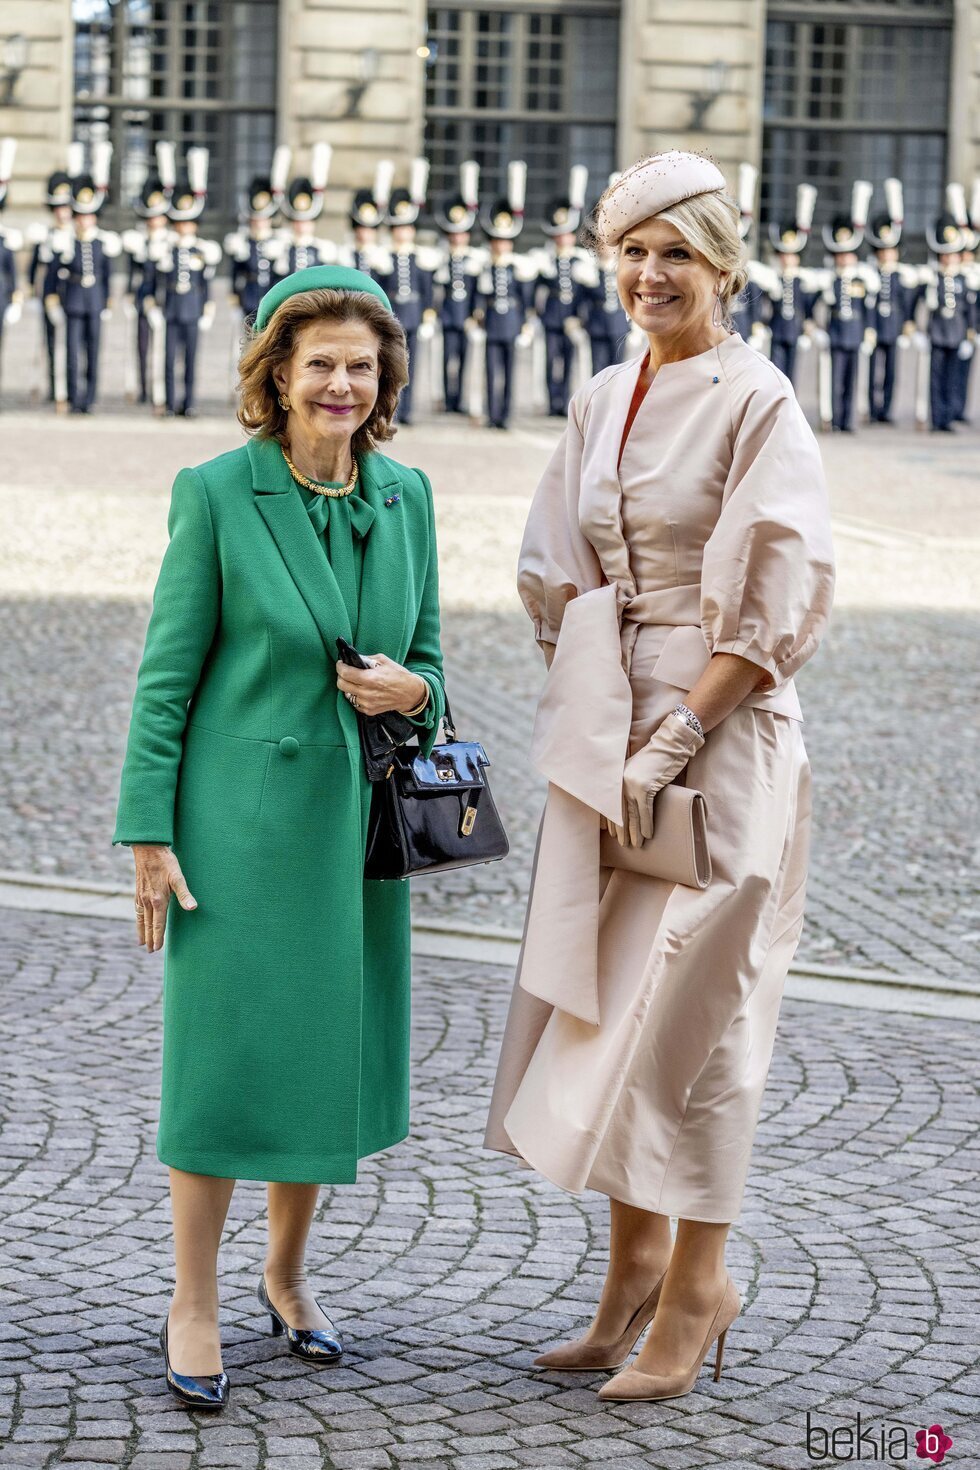 Silvia de Suecia y Máxima de Holanda en la bienvenida a los Reyes de Holanda por su Visita de Estado a Suecia